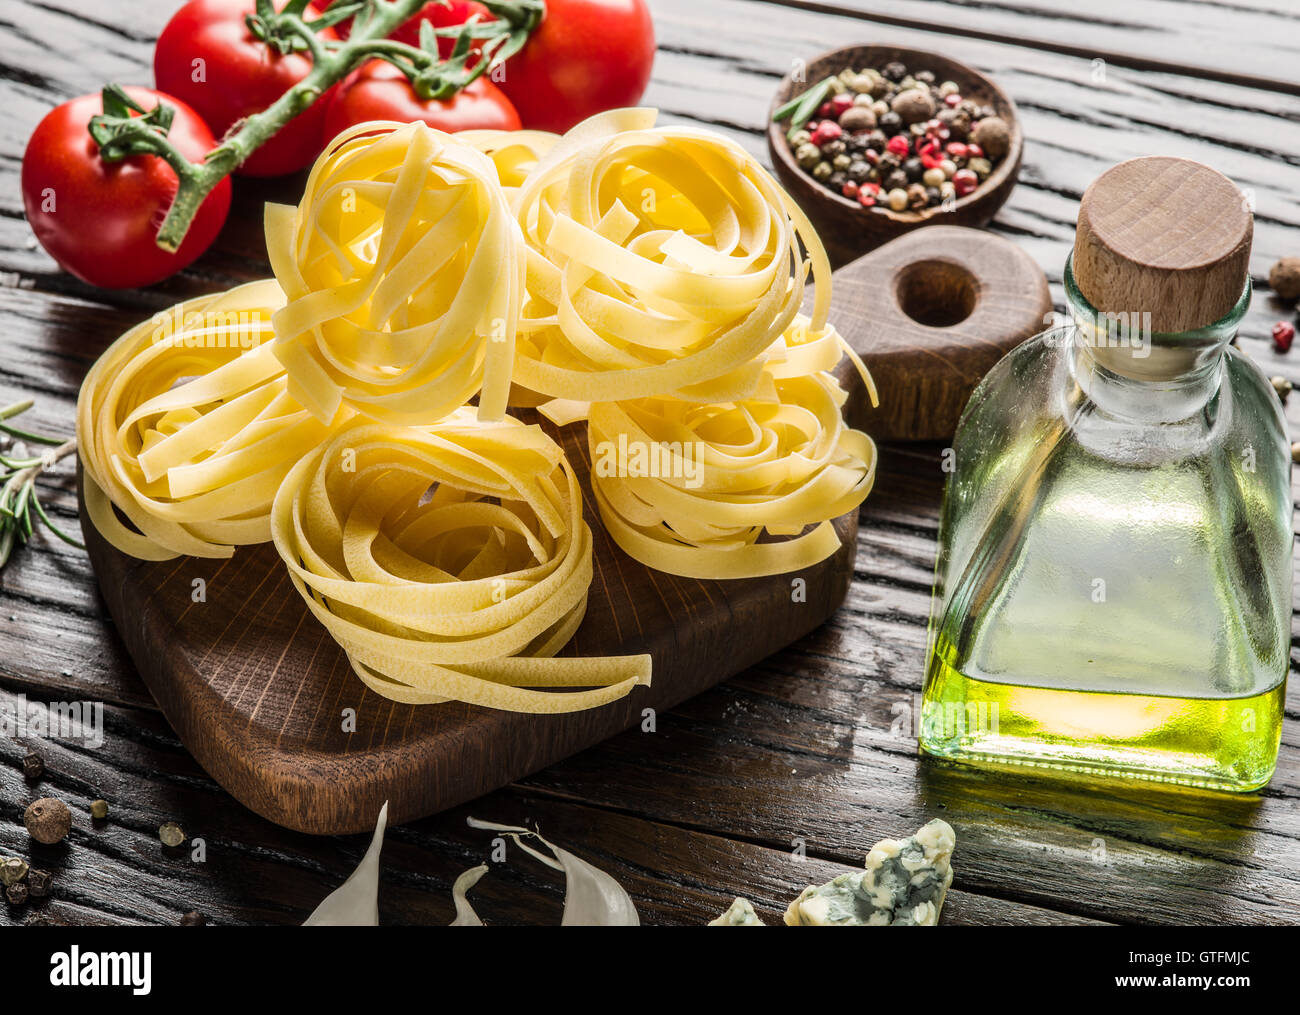 Ingrédients pâtes. Les tomates cerise et les pâtes spaghetti sur la table en bois. Banque D'Images